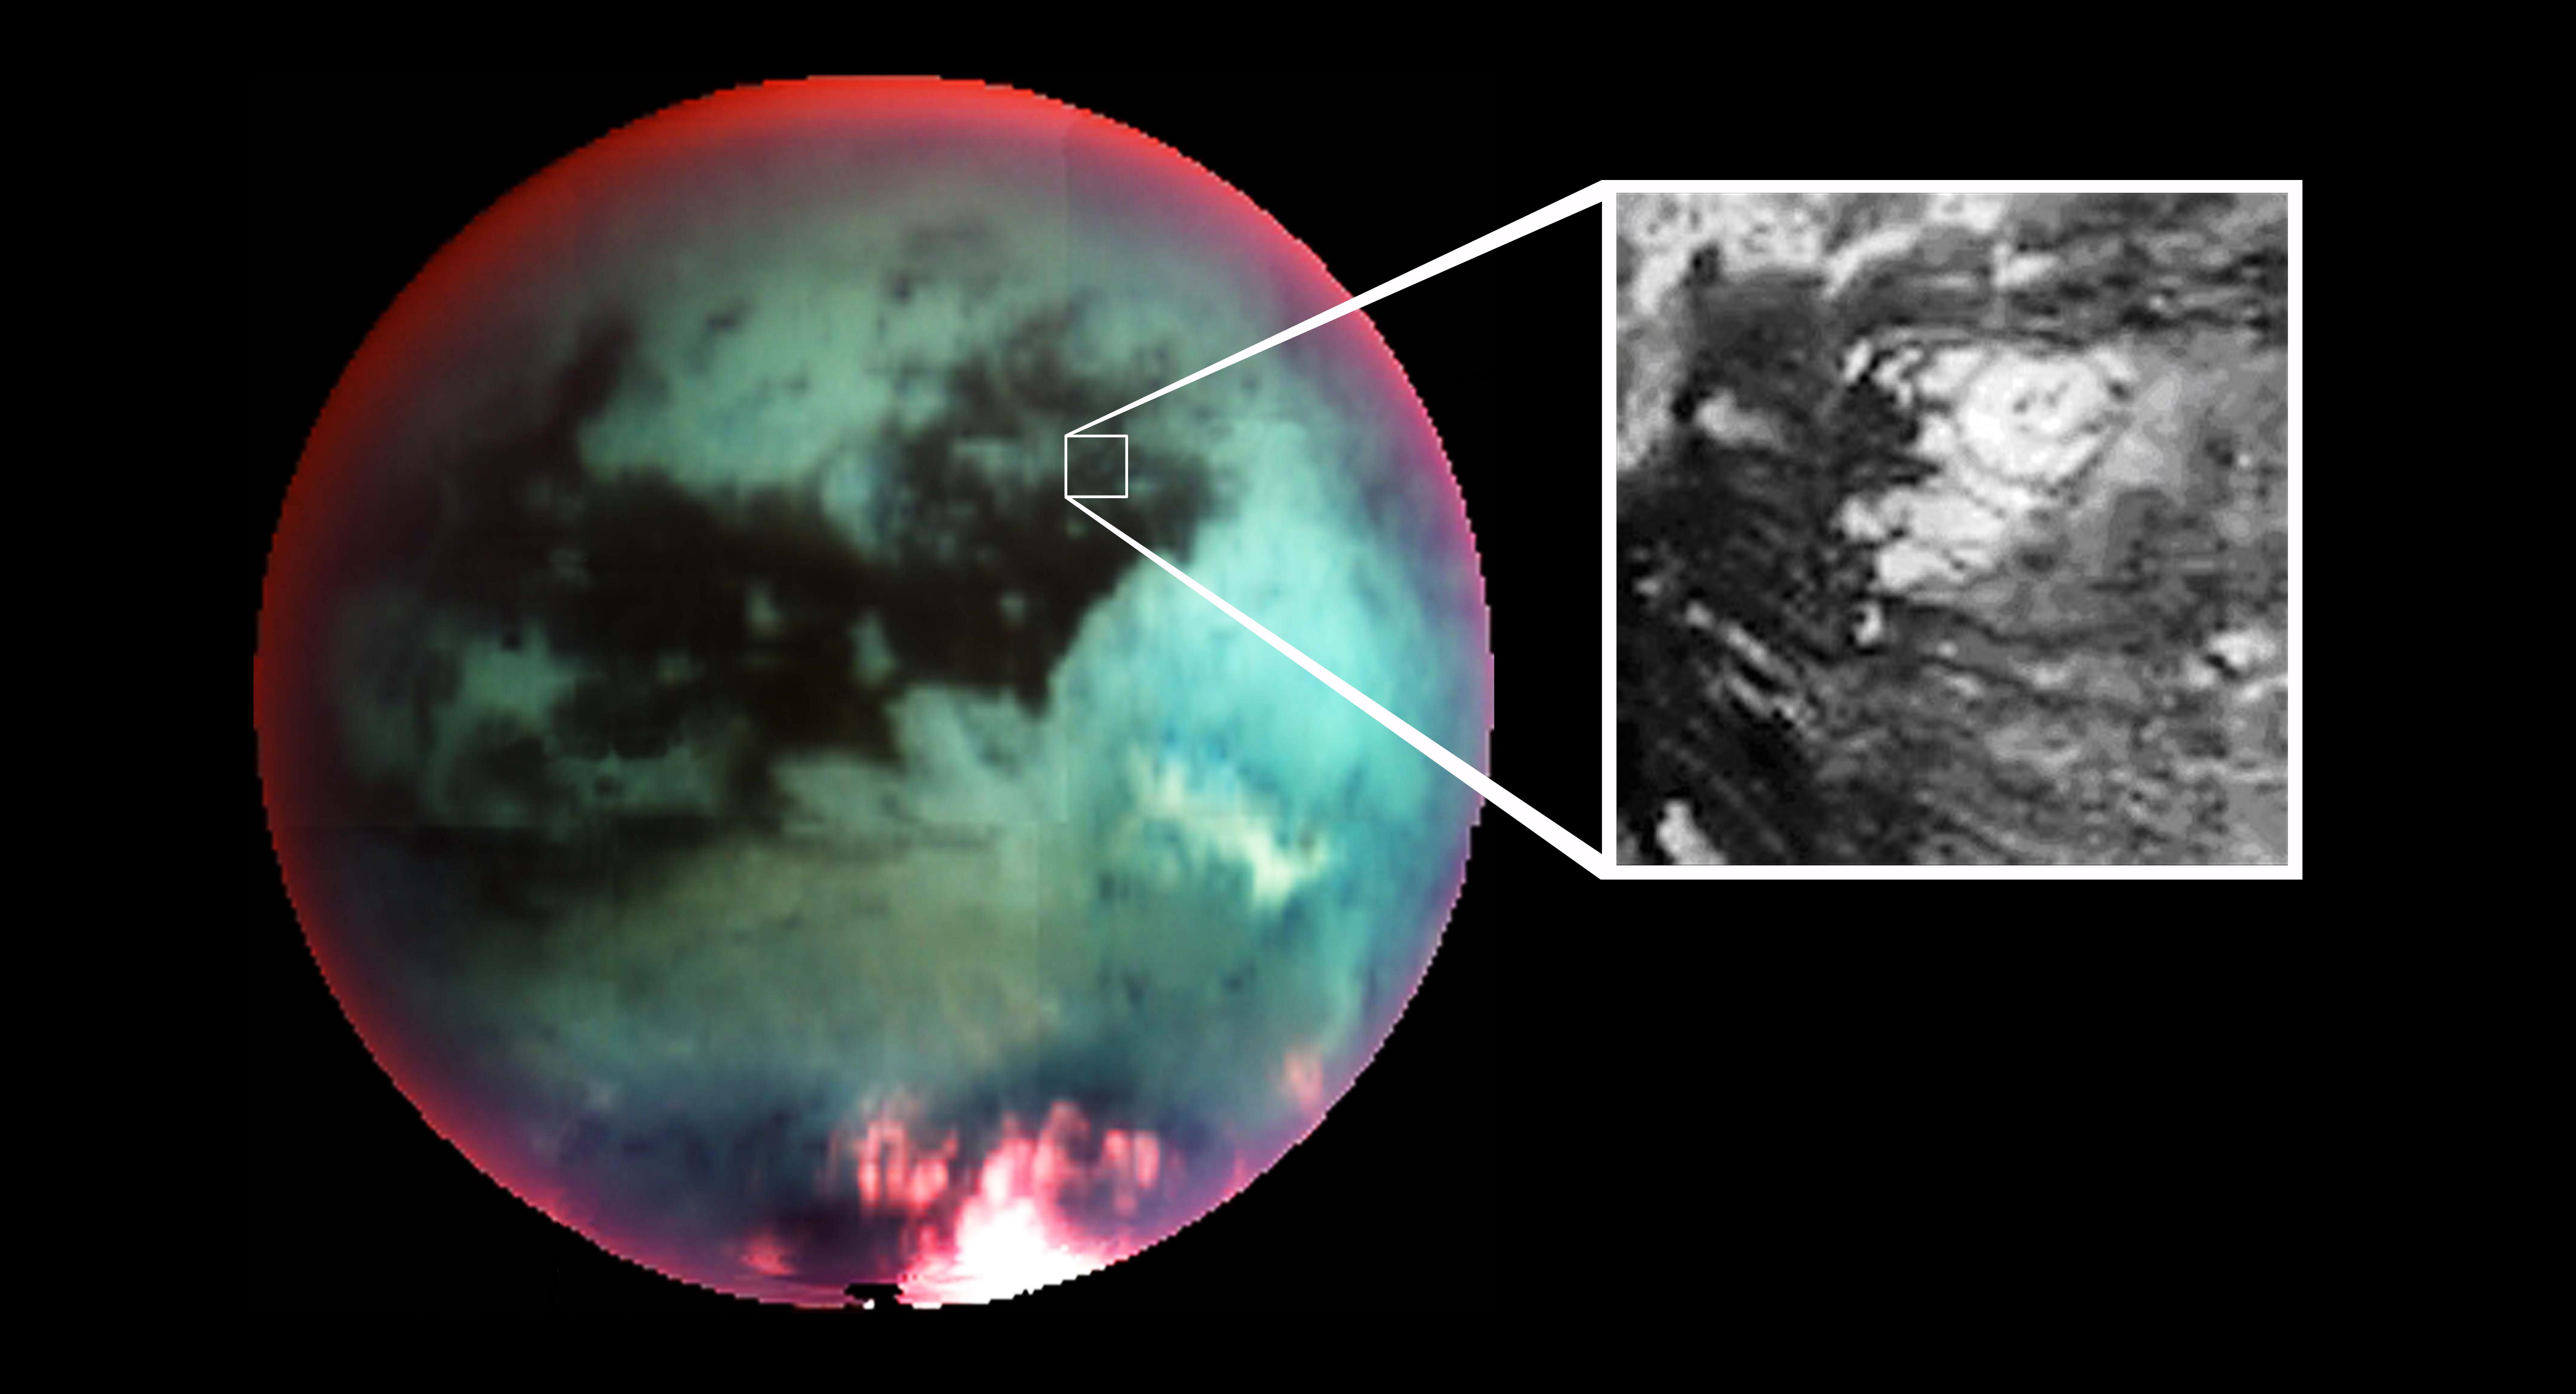 土卫六泰坦重大发现:存在大气层 或有生命!